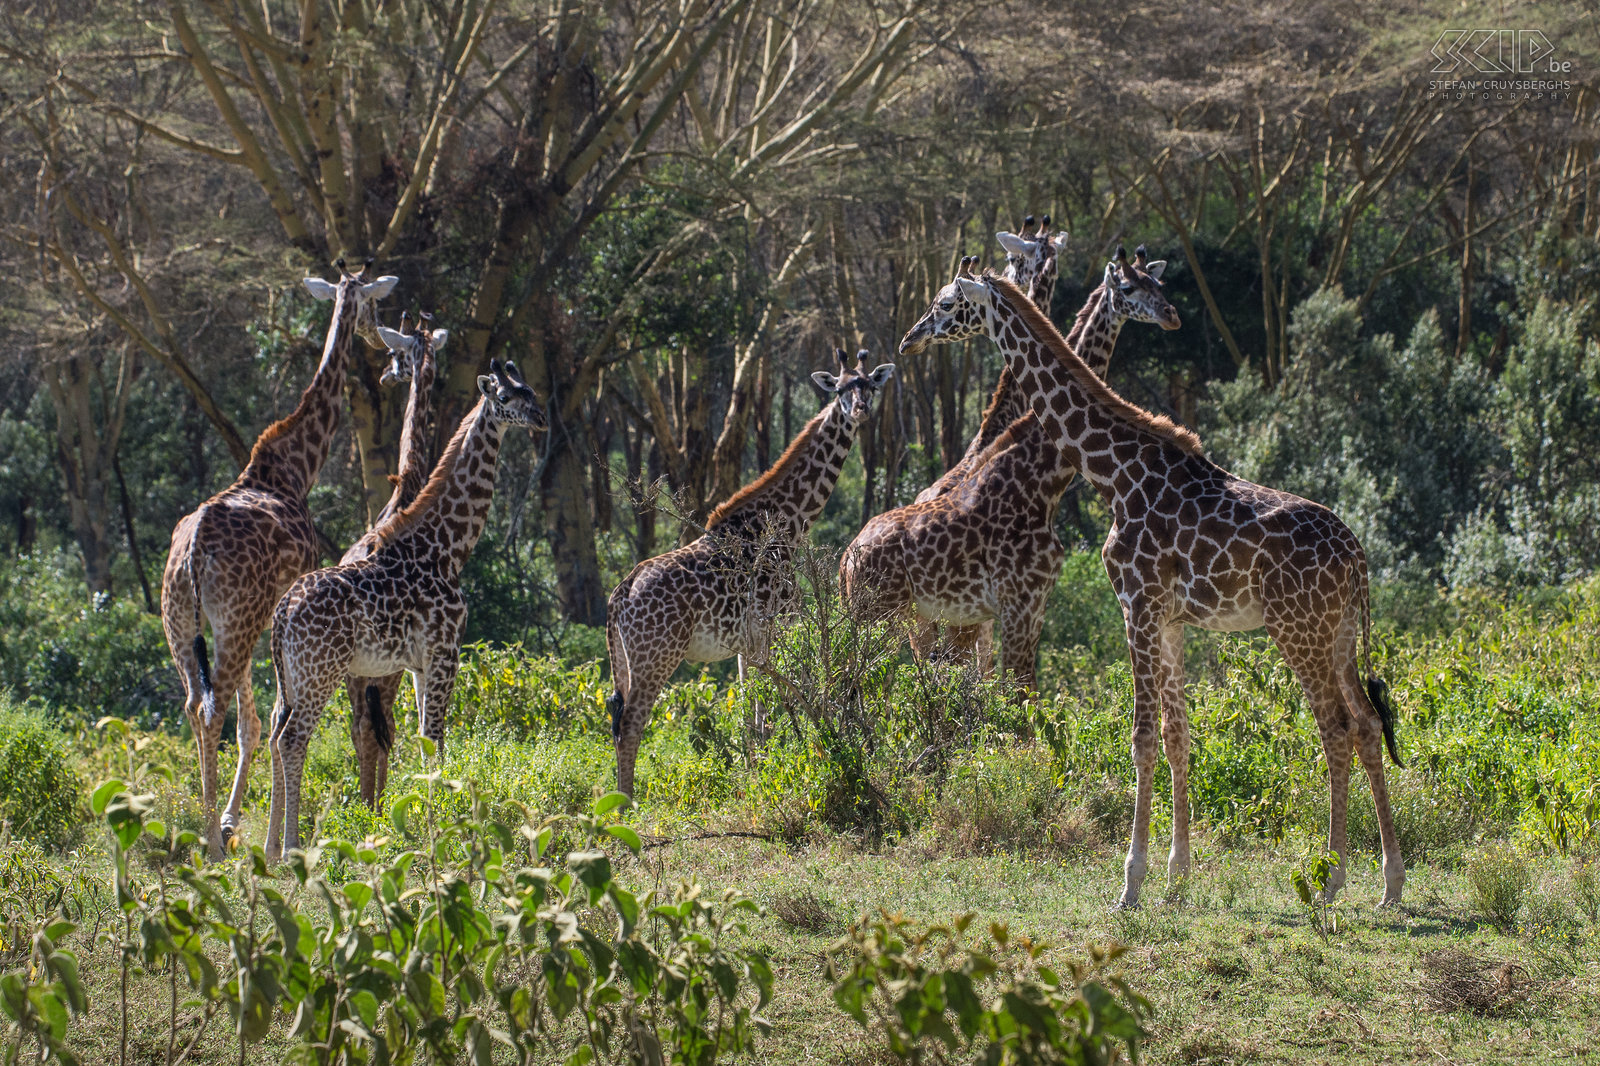 Naivasha - Crater Lake - Giraffen Op den duur stonden we tussen een groep van wel 25 giraffen, een prachtige belevenis. Stefan Cruysberghs